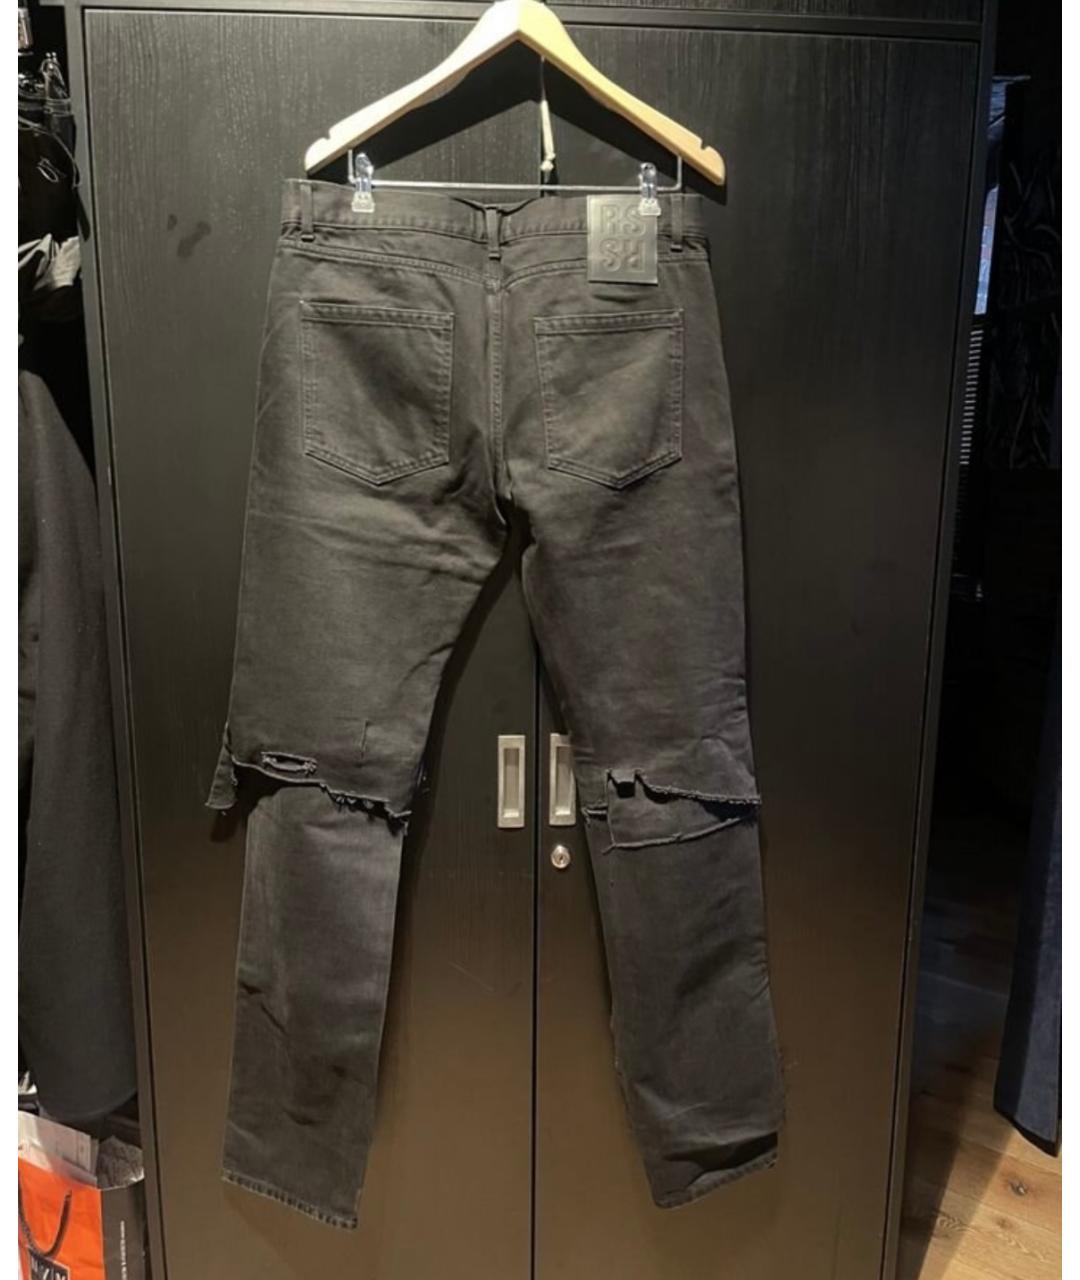 RAF SIMONS Черные хлопковые прямые джинсы, фото 2